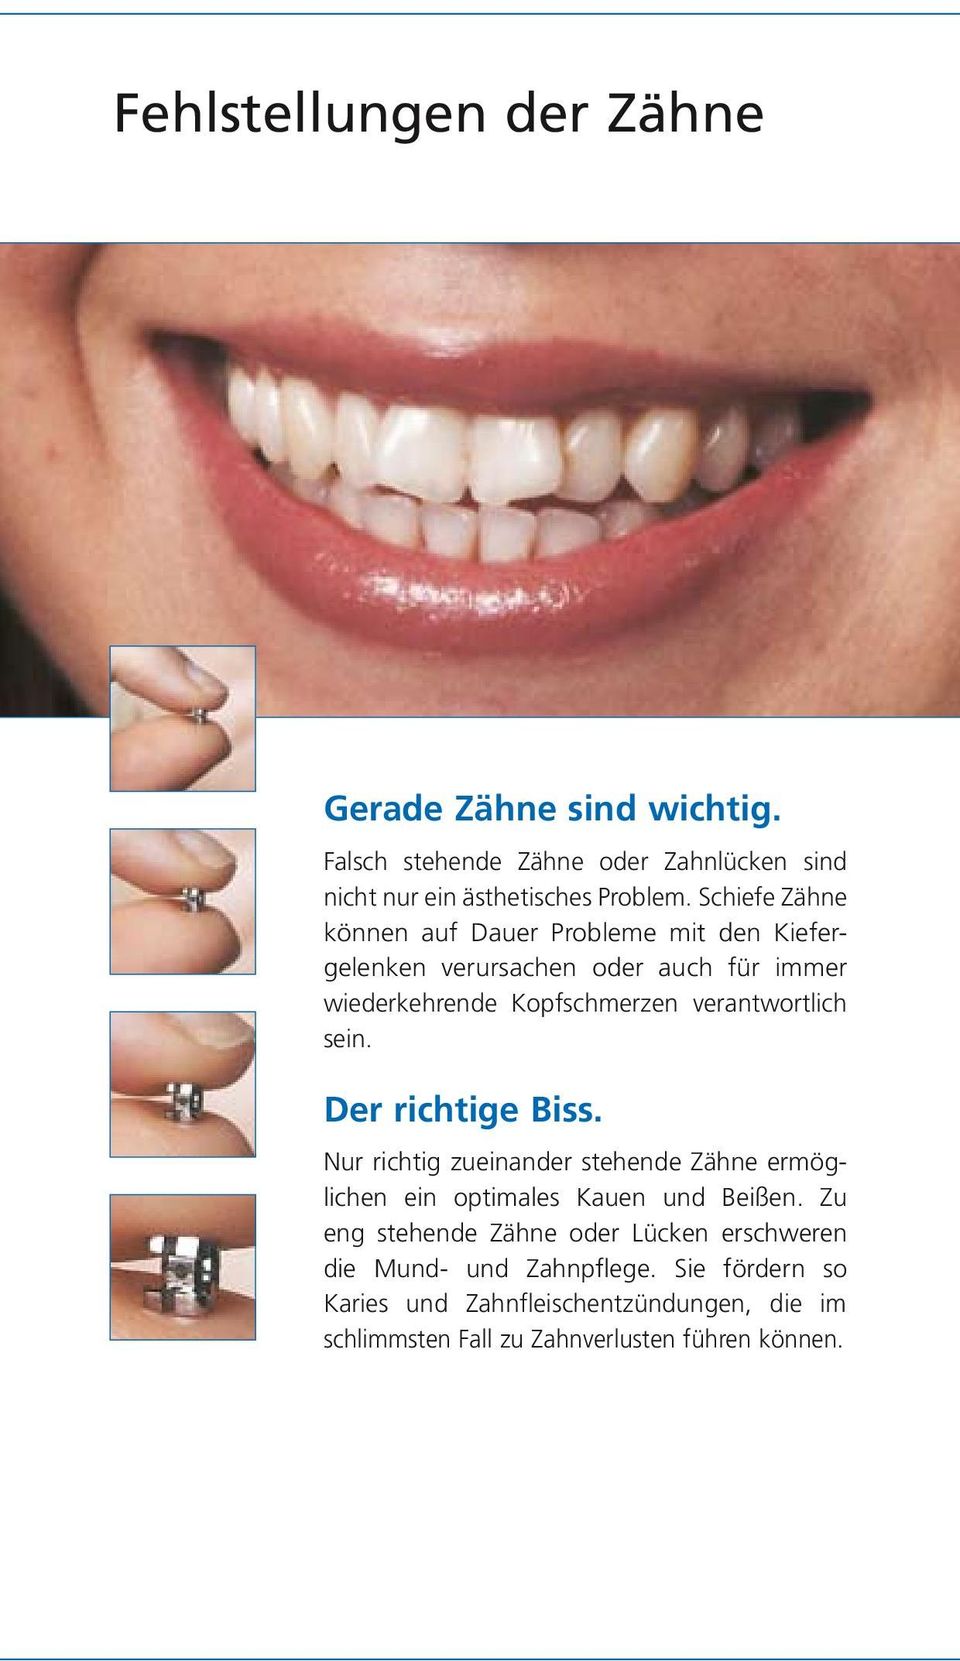 sein. Der richtige Biss. Nur richtig zueinander stehende Zähne ermöglichen ein optimales Kauen und Beißen.